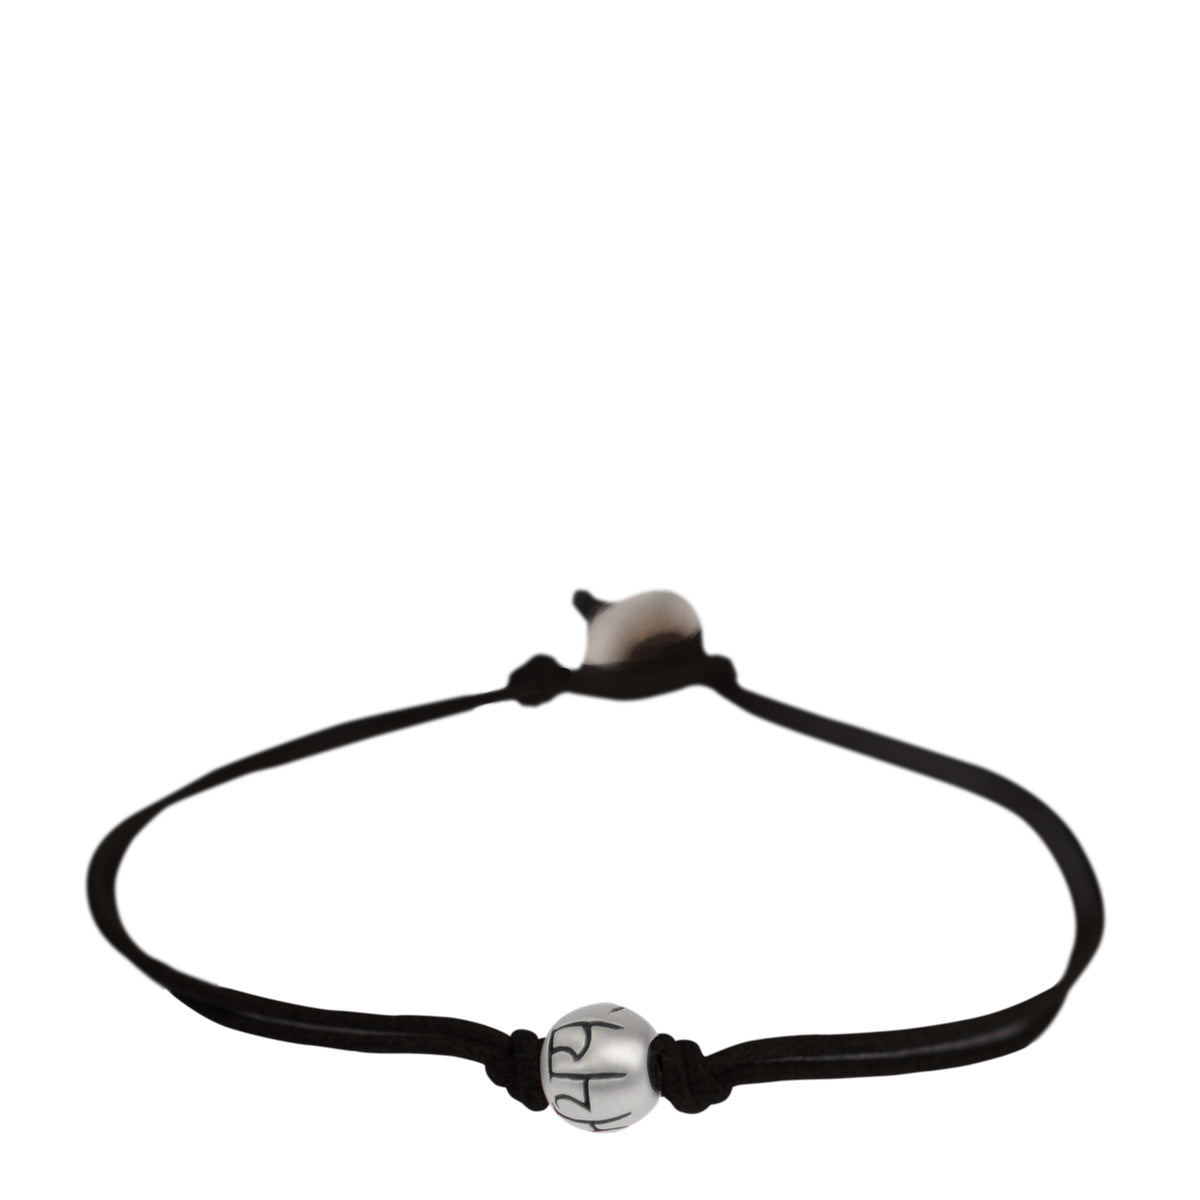 Buy Initial Bracelet, Customise Men's Bracelet, Black Round Bead, English  Letter Black Cord, Personalised Monogram Bracelet for Men Gift for Him  Online in India - Etsy